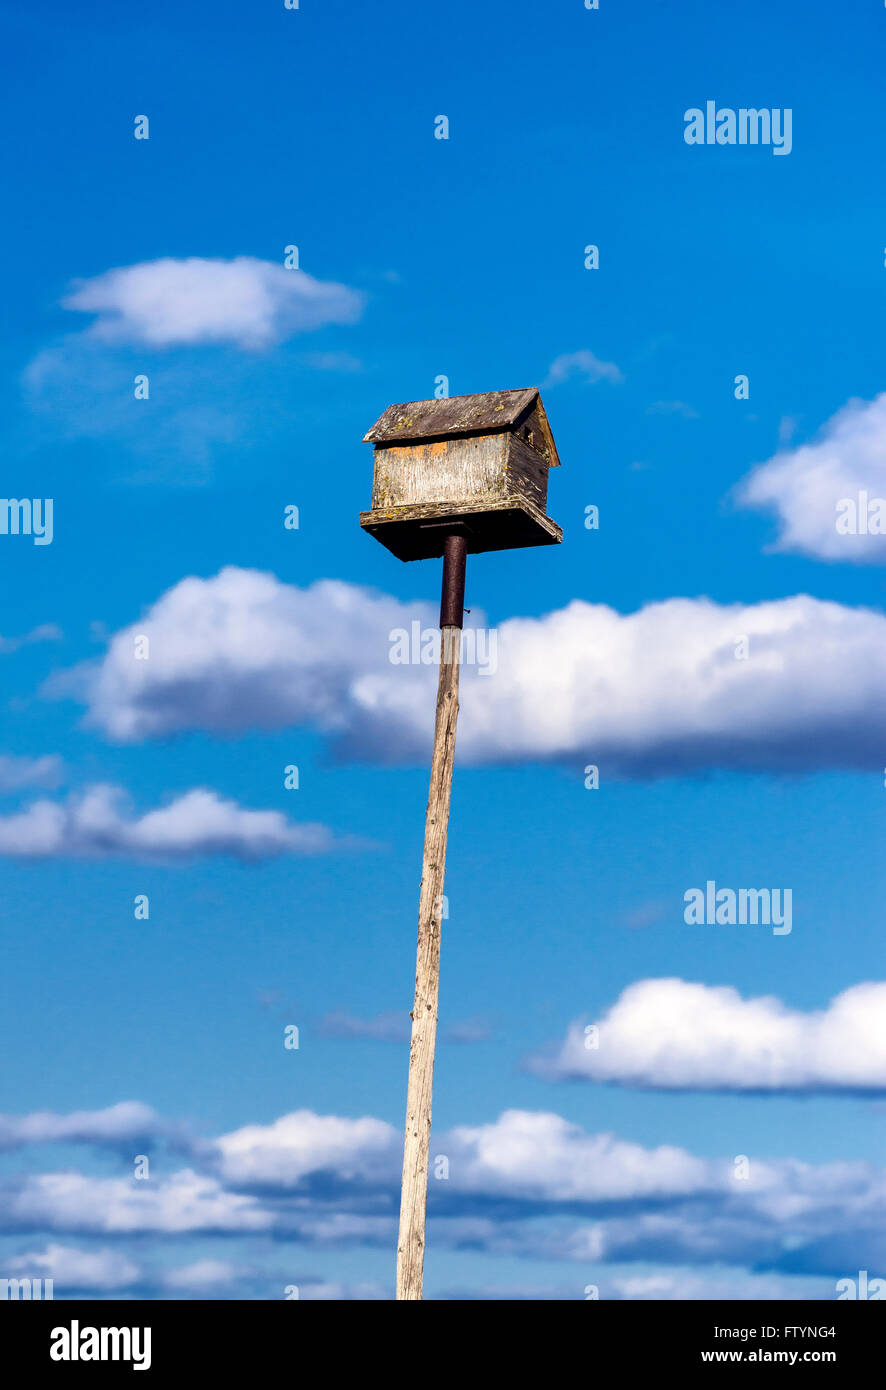 Birdhouse on a tall pole. Stock Photo